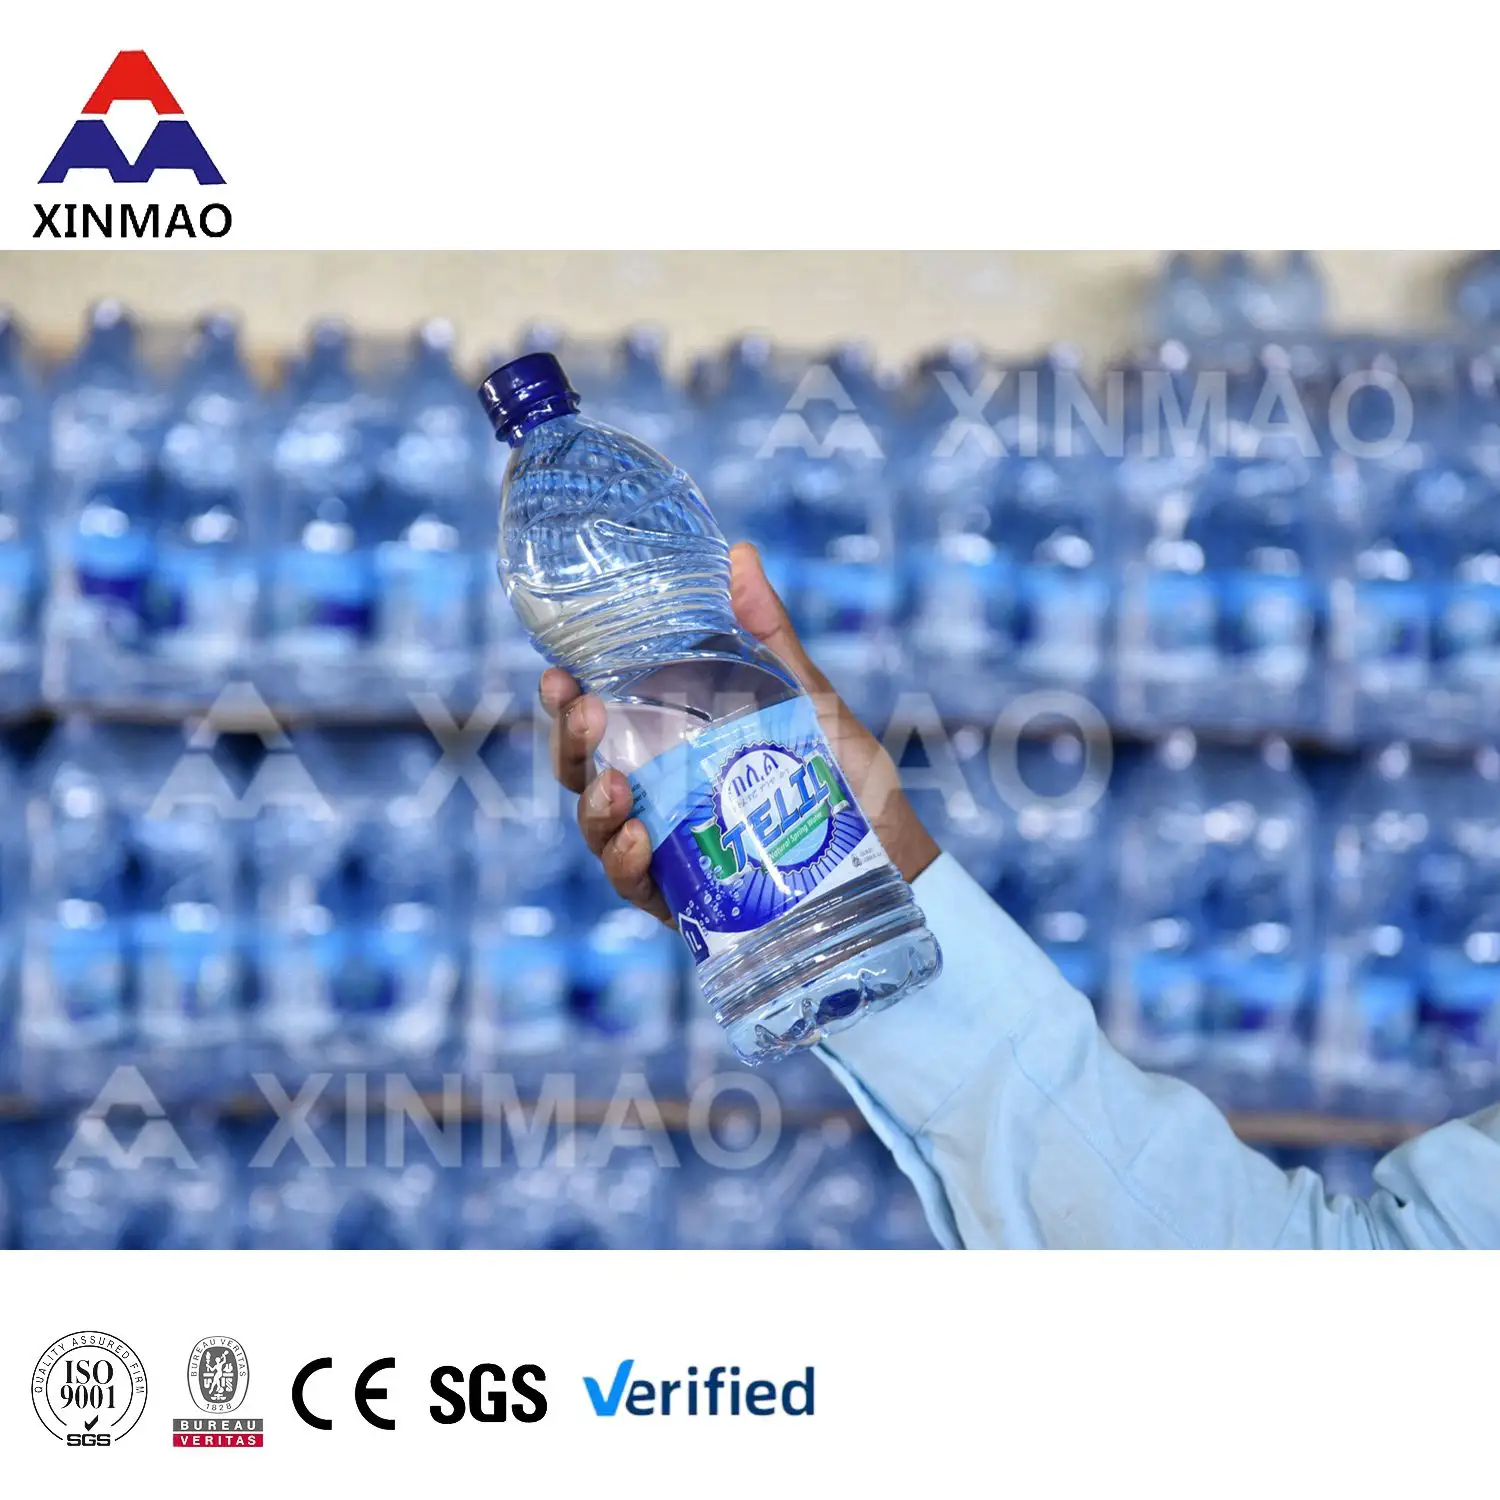 מחיר סין שלם 8000bph PET בקבוקי קו ייצור אוטומטי מינרלי טהור 3 ב-1 מכונת מילוי מים